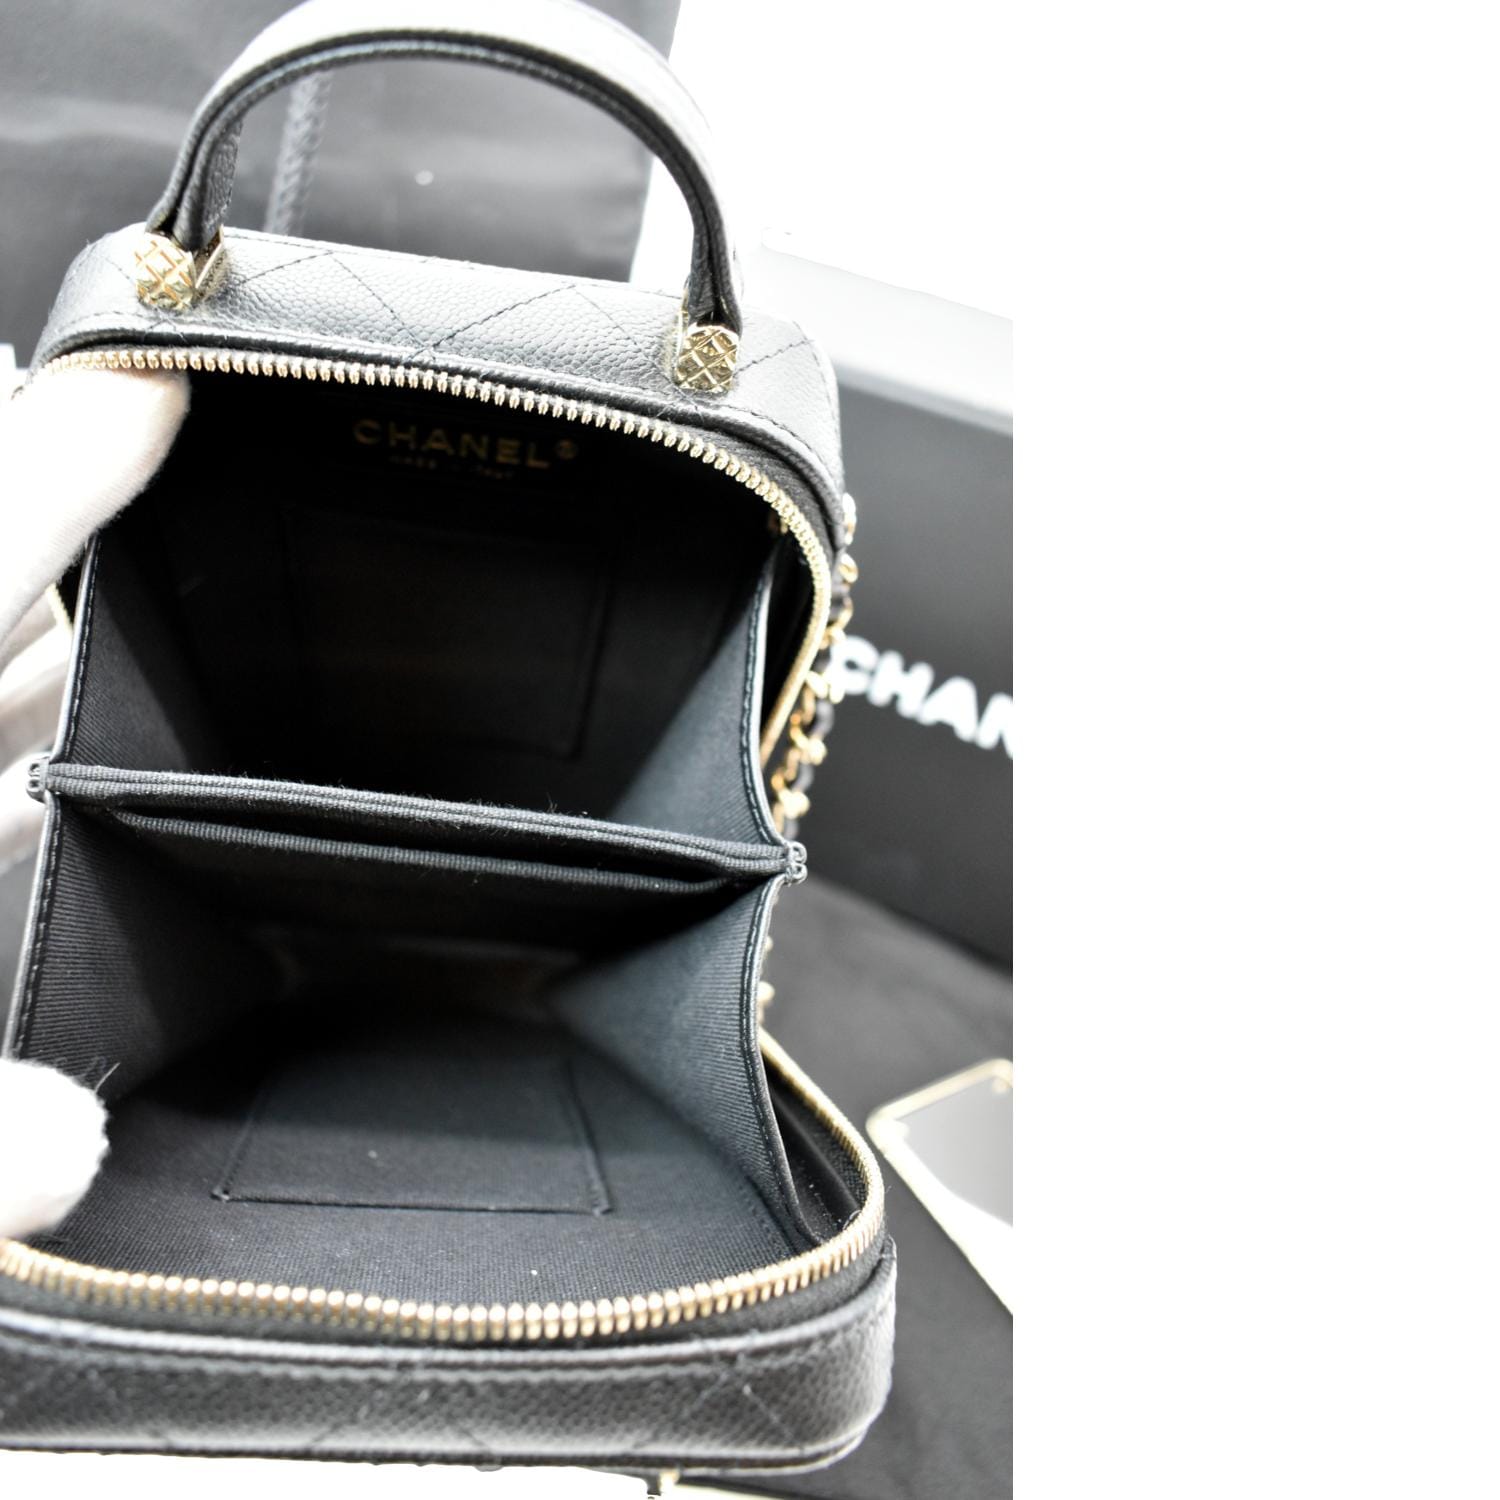 CHANEL Sac Vanity Caviar Leather Shoulder Bag Black - Hot Deals